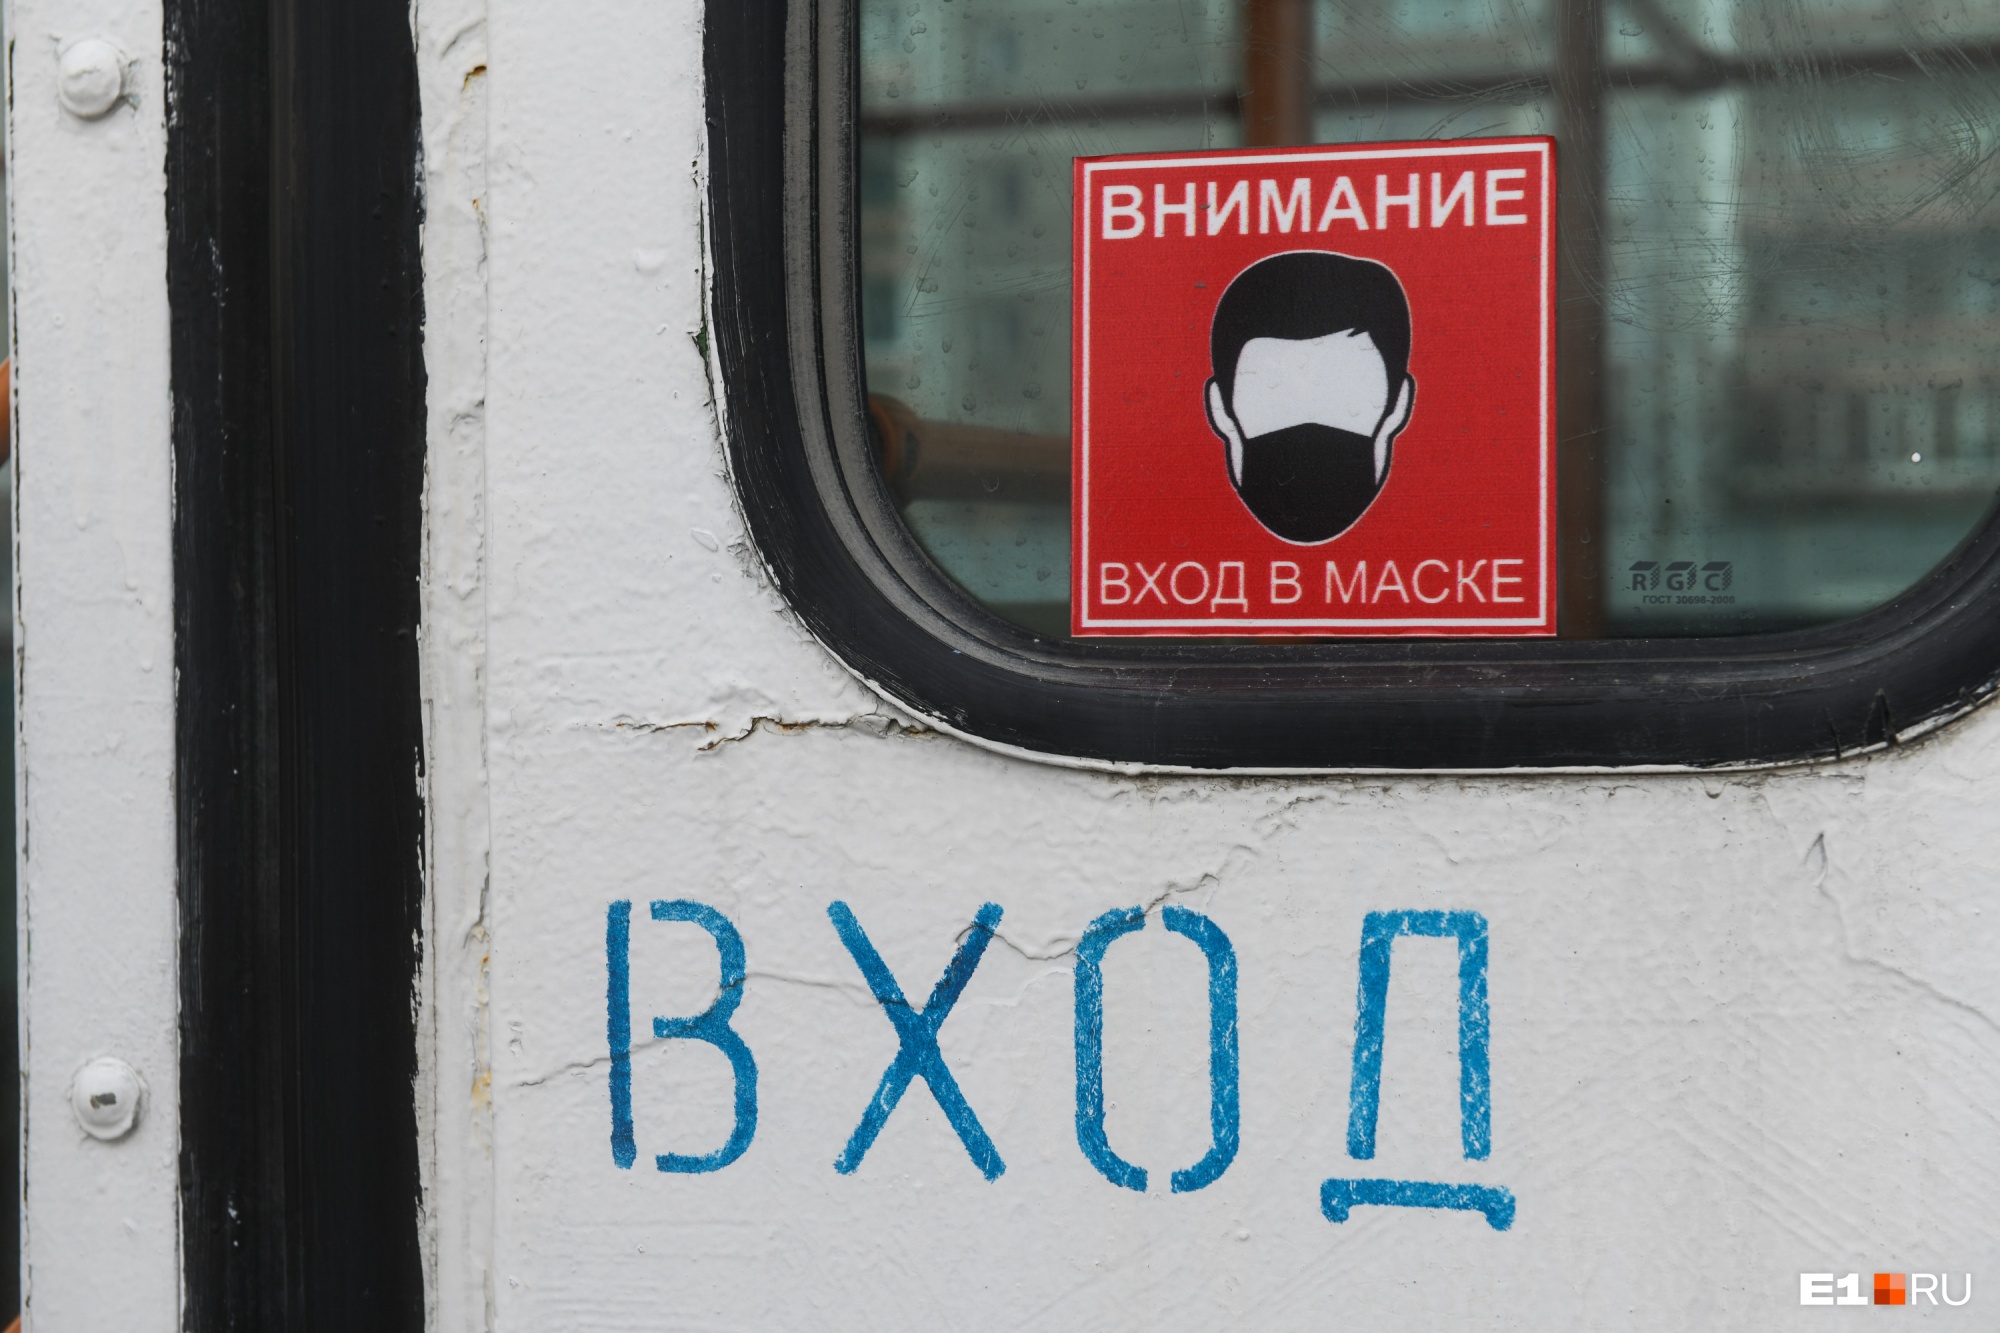 Ковид-диссидентов заставят платить за простой общественного транспорта в Екатеринбурге